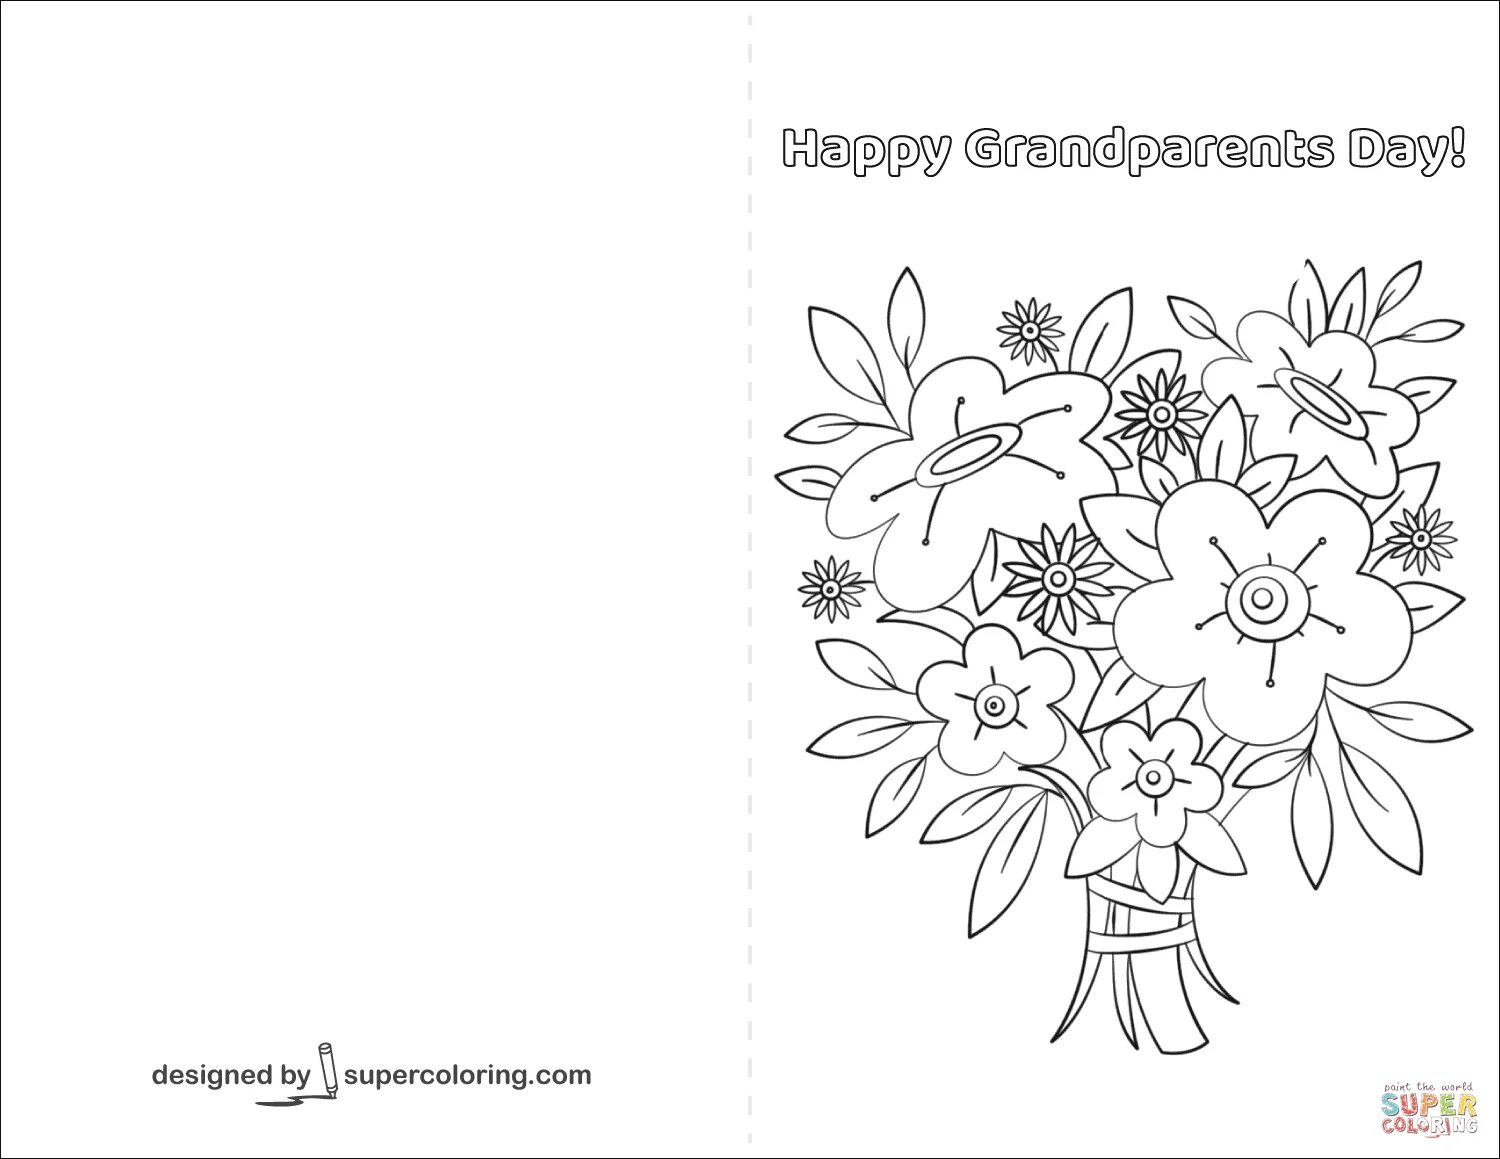 Картинки открытки раскраски. Раскраска поздравительная открытка. Раскраска с днем рождения бабушка. Открытка с днём рождения бабушке раскраска. Открытка раскраска поздравление.